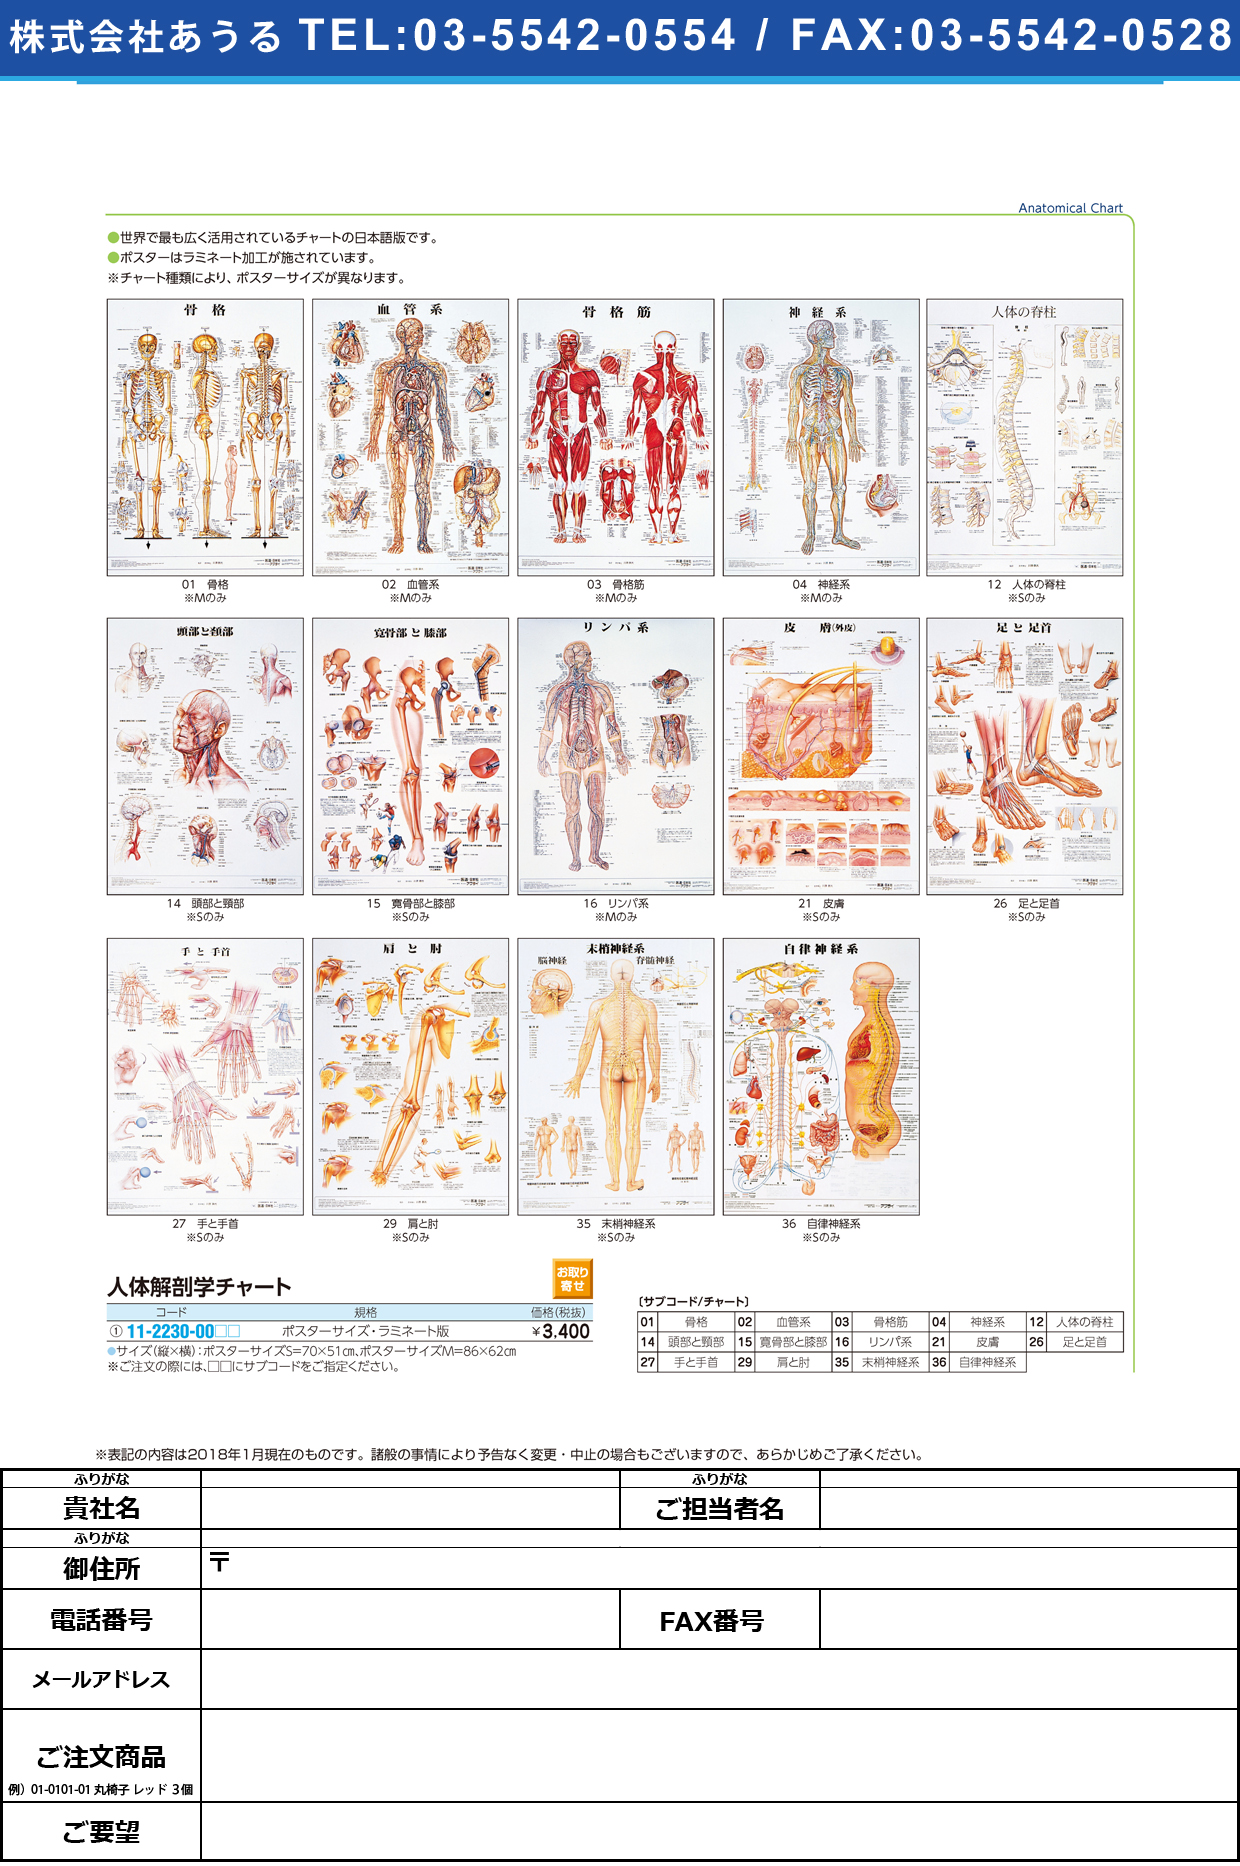 (11-2230-00)人体解剖学チャート（ポスターサイズ） ﾗﾐﾈｰﾄﾊﾞﾝ ｼﾞﾝﾀｲｶｲﾎﾞｳｶﾞｸﾁｬｰﾄ 骨格筋Ｍ(京都科学)【1枚単位】【2019年カタログ商品】